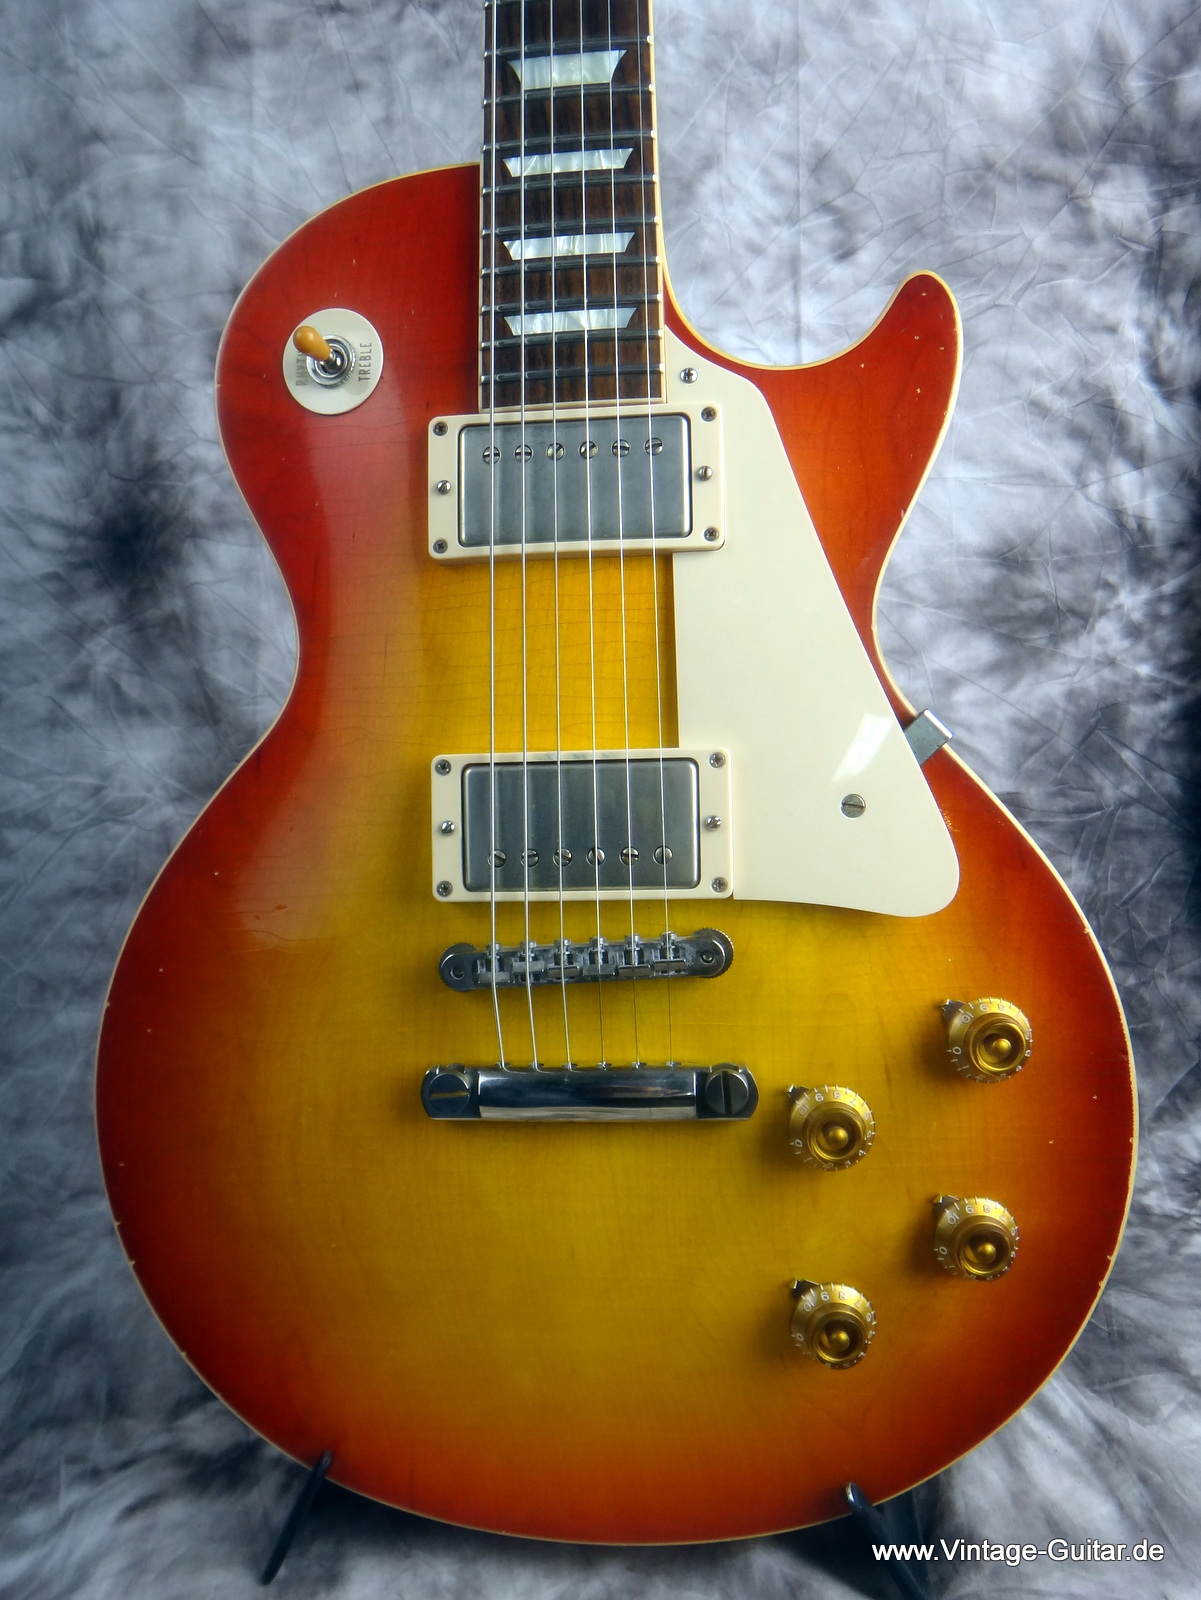 Gibson-Les-Paul-R8-1958-Reissue-Cutsom-Shop-003.JPG